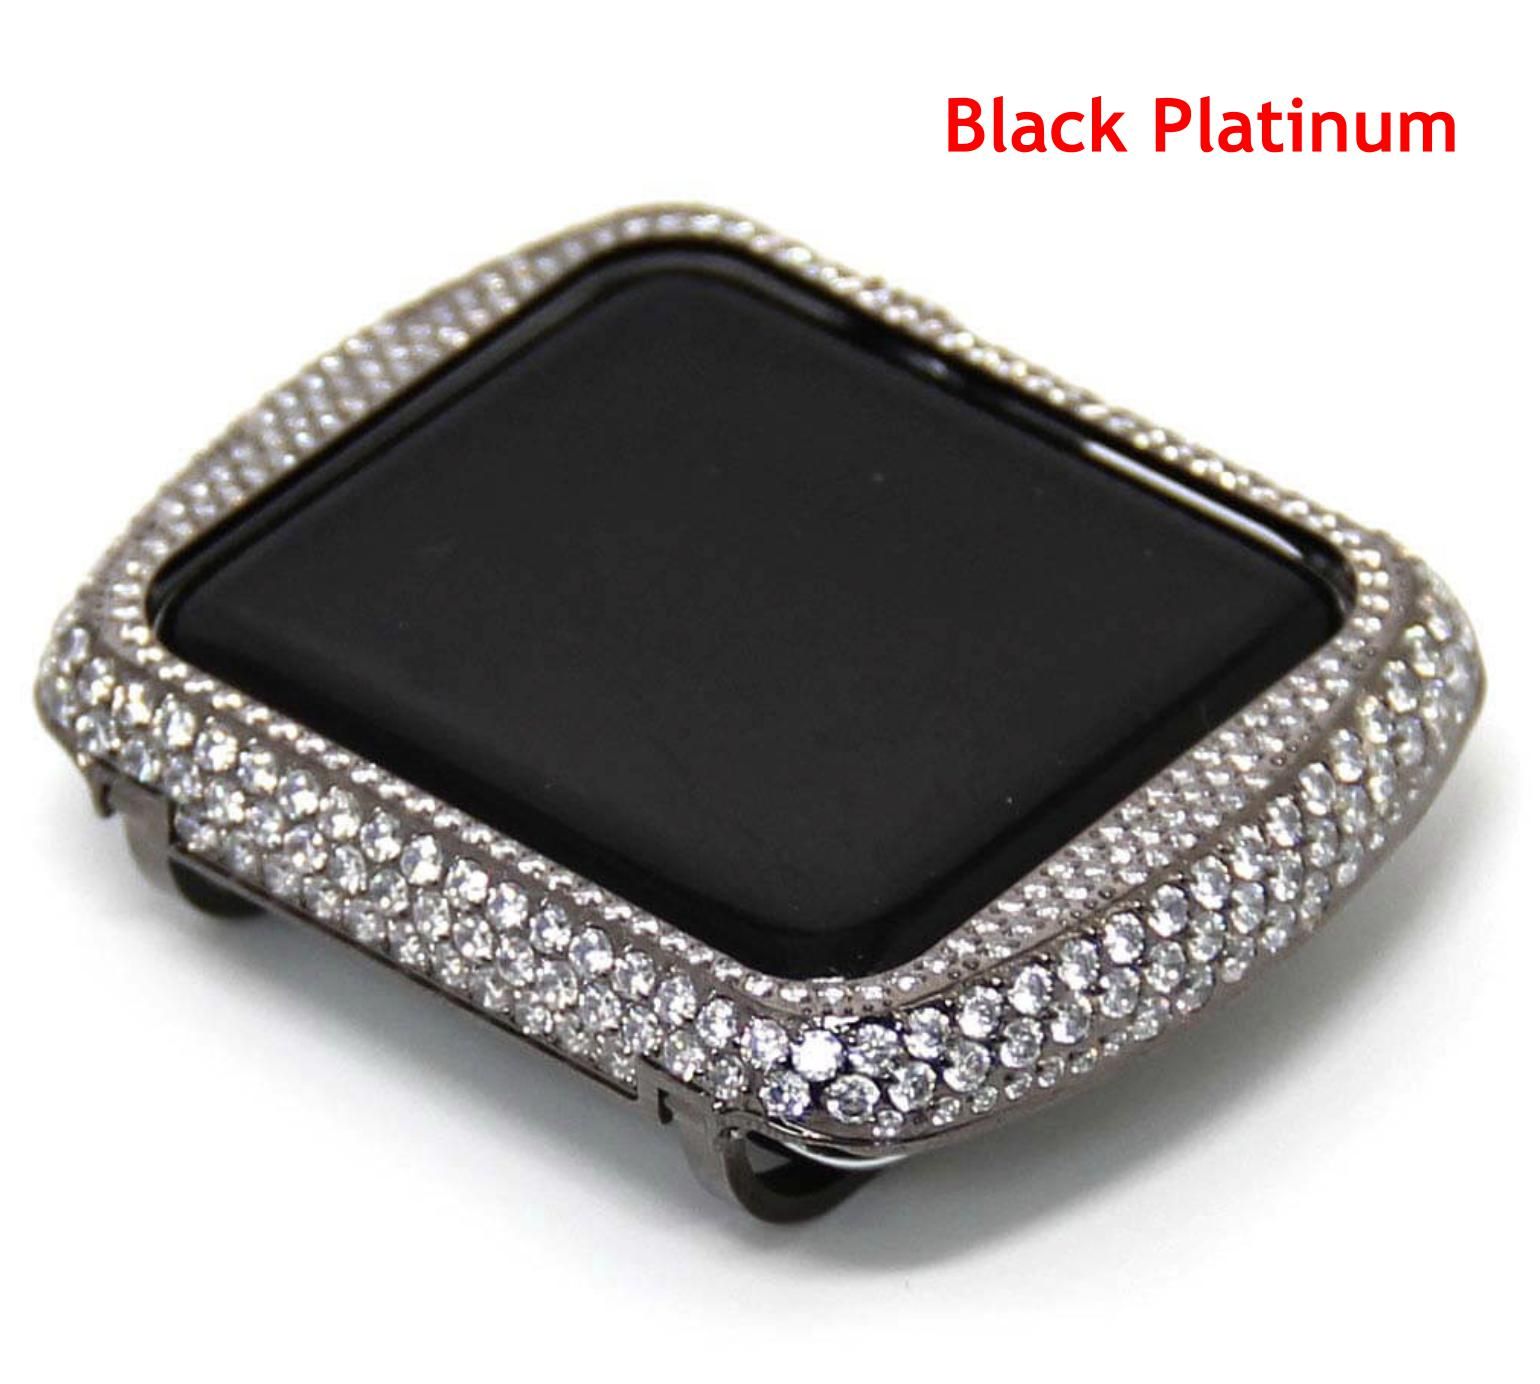 Black Platinum (38mm)